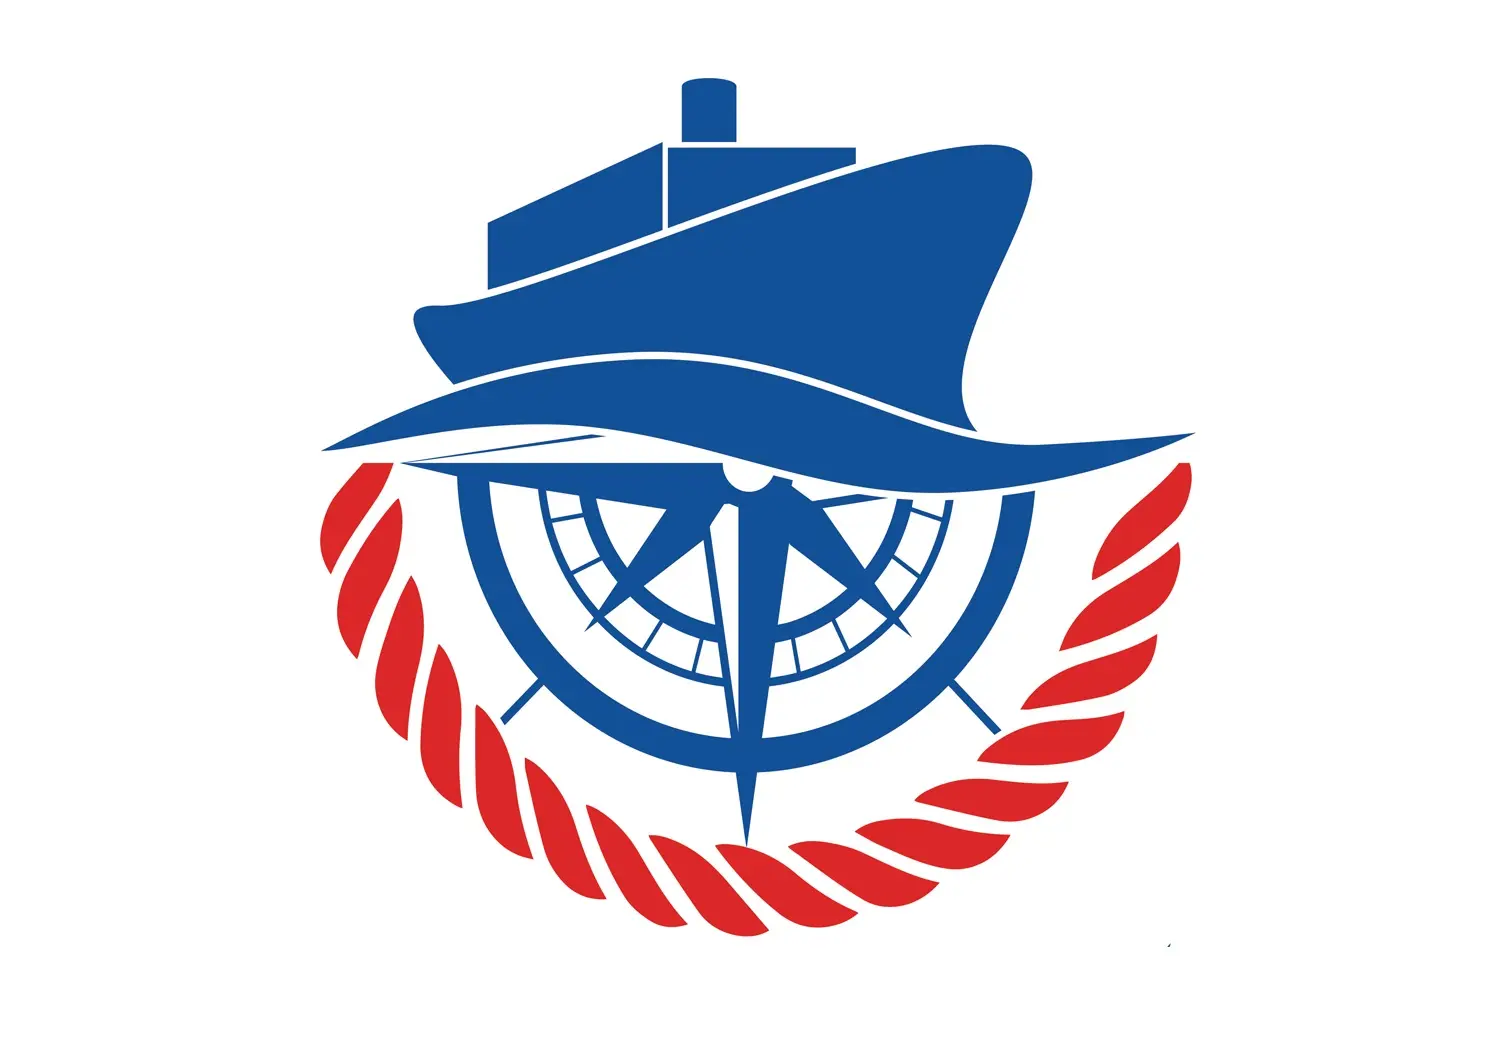 انجمن کشتیرانی و خدمات وابسته